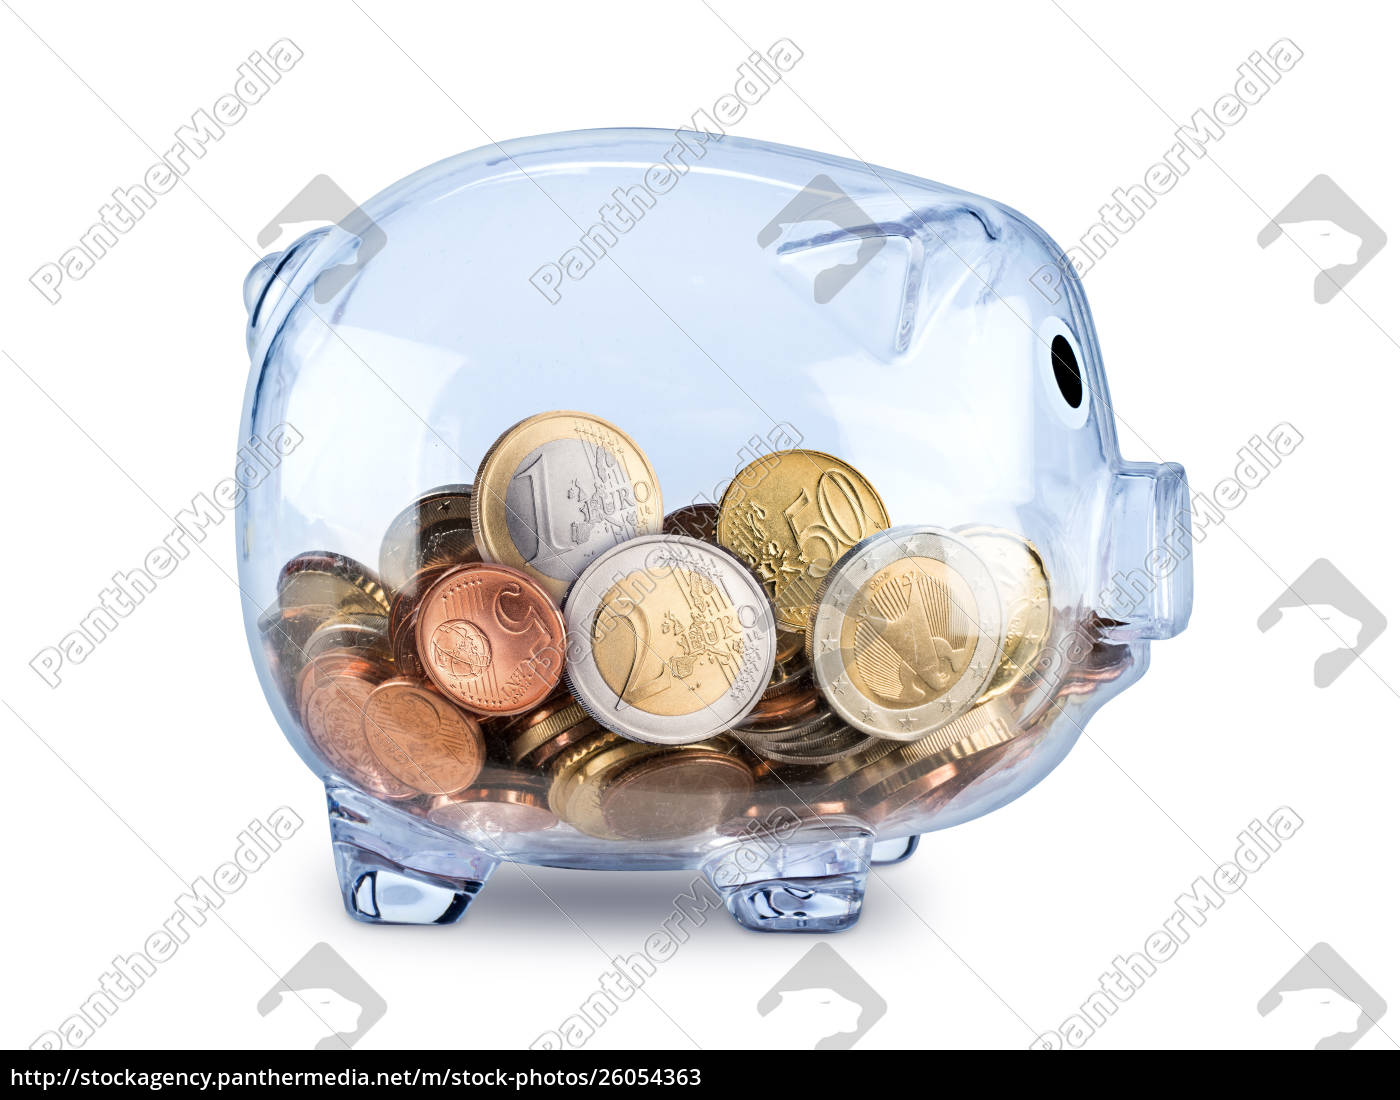 salvadanaio trasparente pieno di monete in euro - Foto stock #26054363